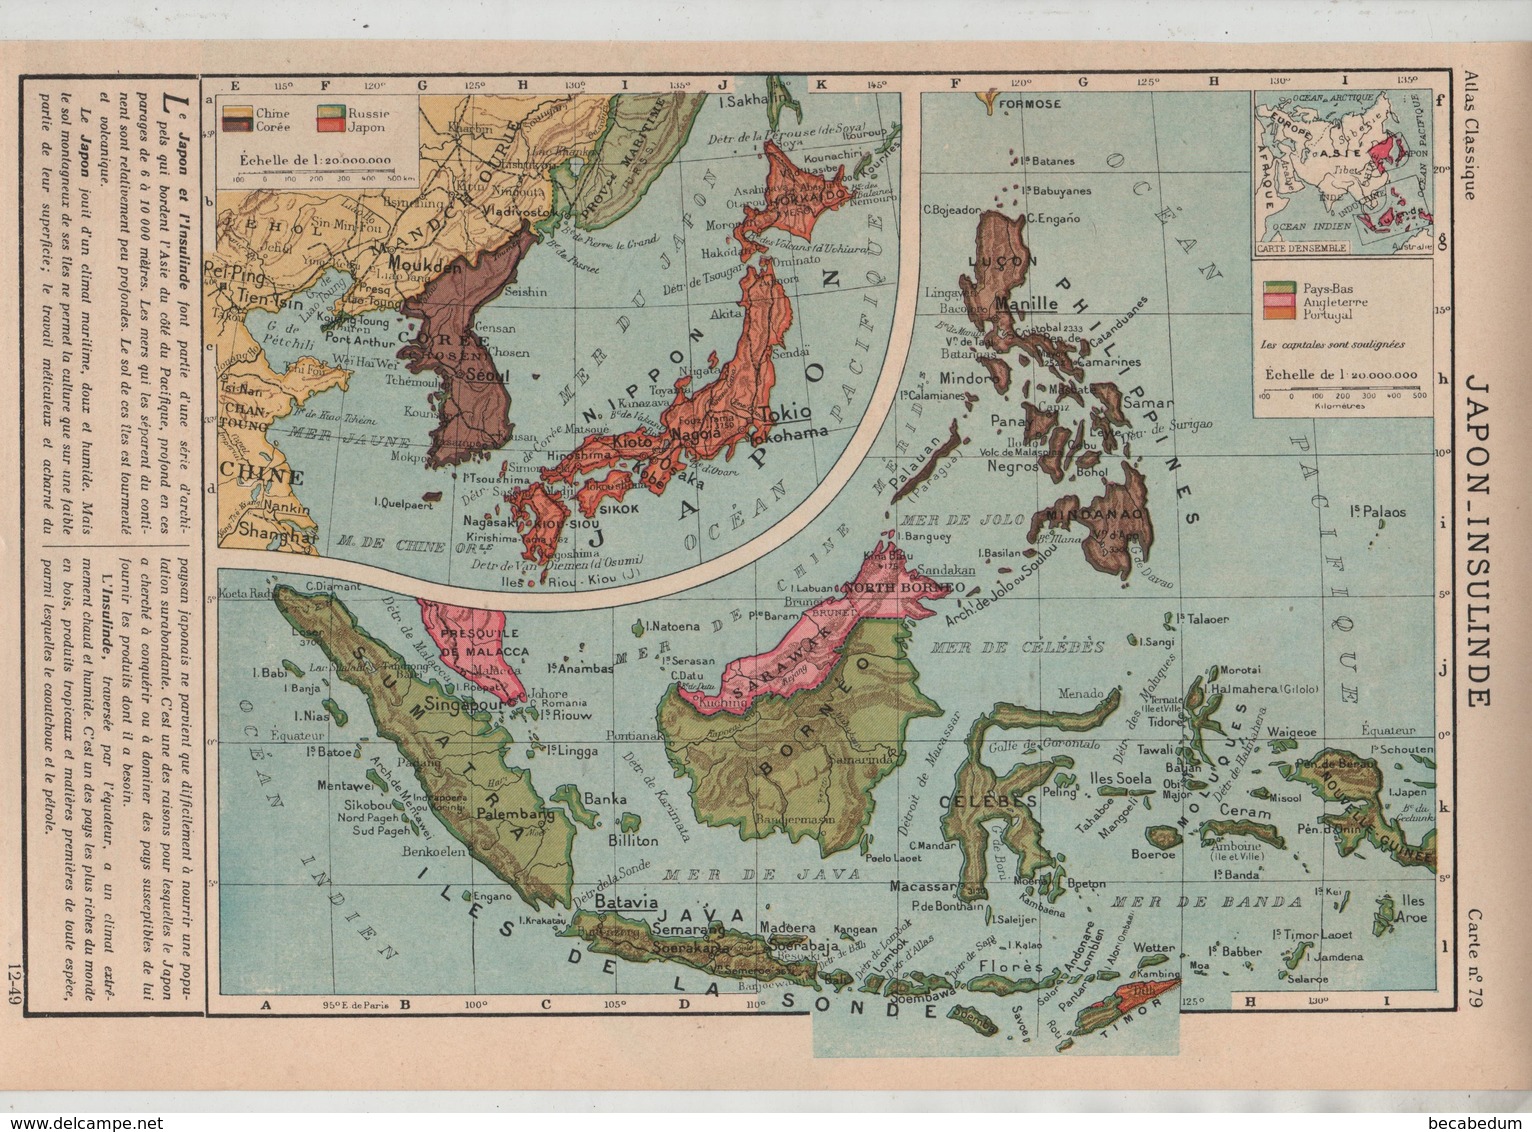 Japon Insulinde Corée Sarawak 1949 Célèbes Bornéo Sumatra Moluques Timor La Sonde Mindanao Philippines... - Cartes Géographiques